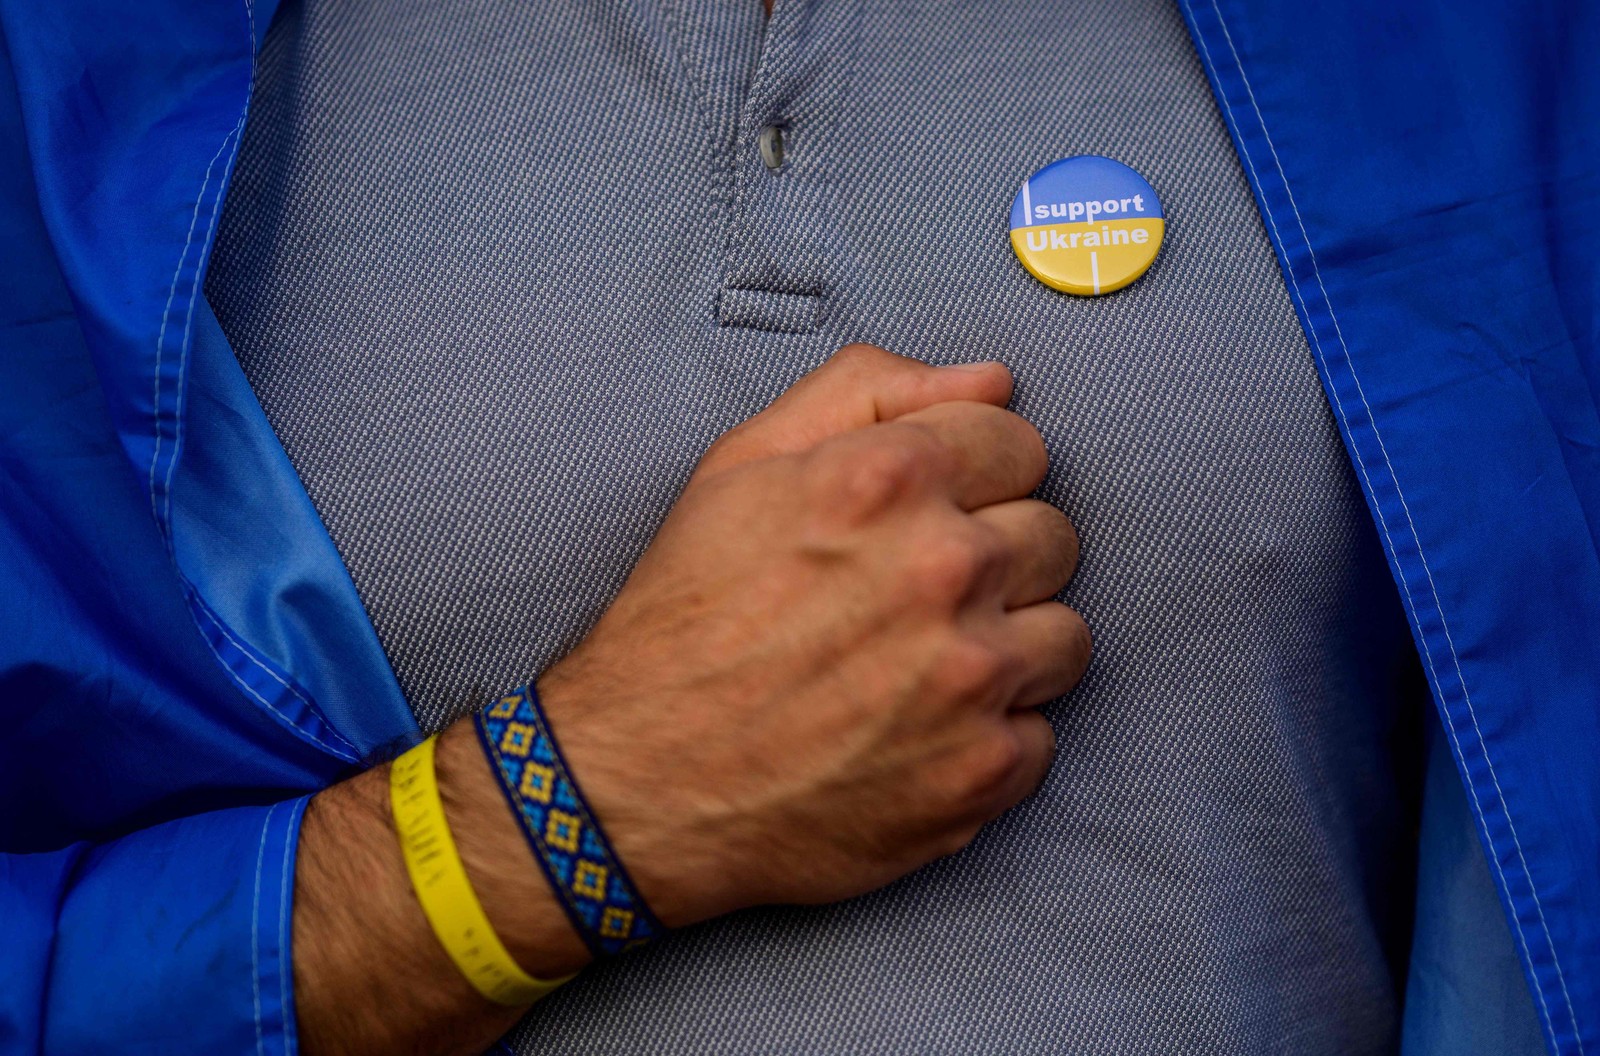 Homem usa um broche em que se lê "Eu apoio a Ucrânia" durante um concerto do Dia da Independência da Ucrânia, em Berlim — Foto: John MACDOUGALL / AFP